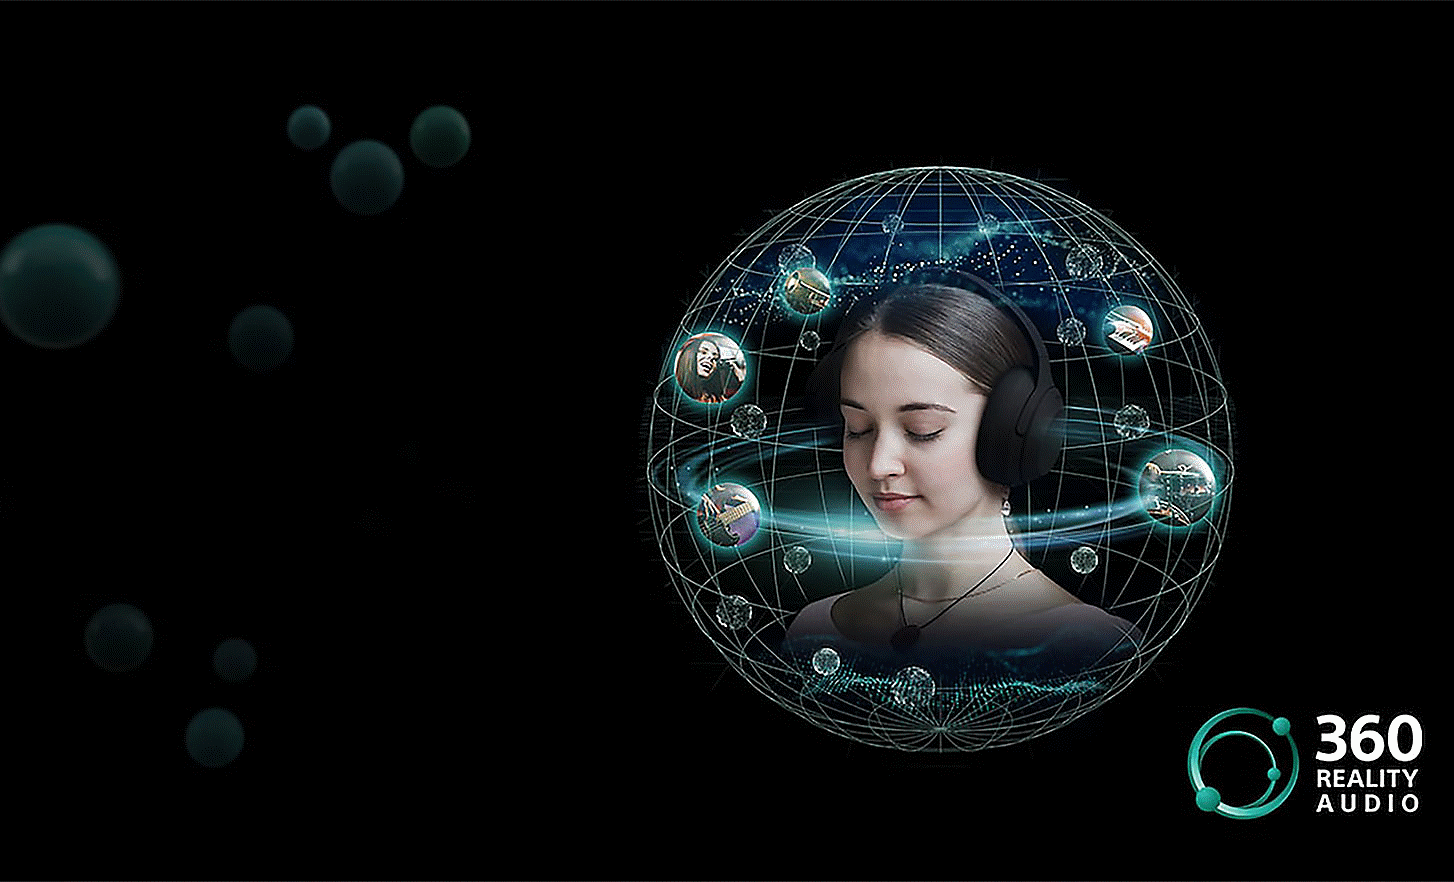 Obrázok osoby s nasadenými slúchadlami, ktorá je obklopená zvukovými bublinami v obežnej sieti, a logo 360 Reality Audio vpravo